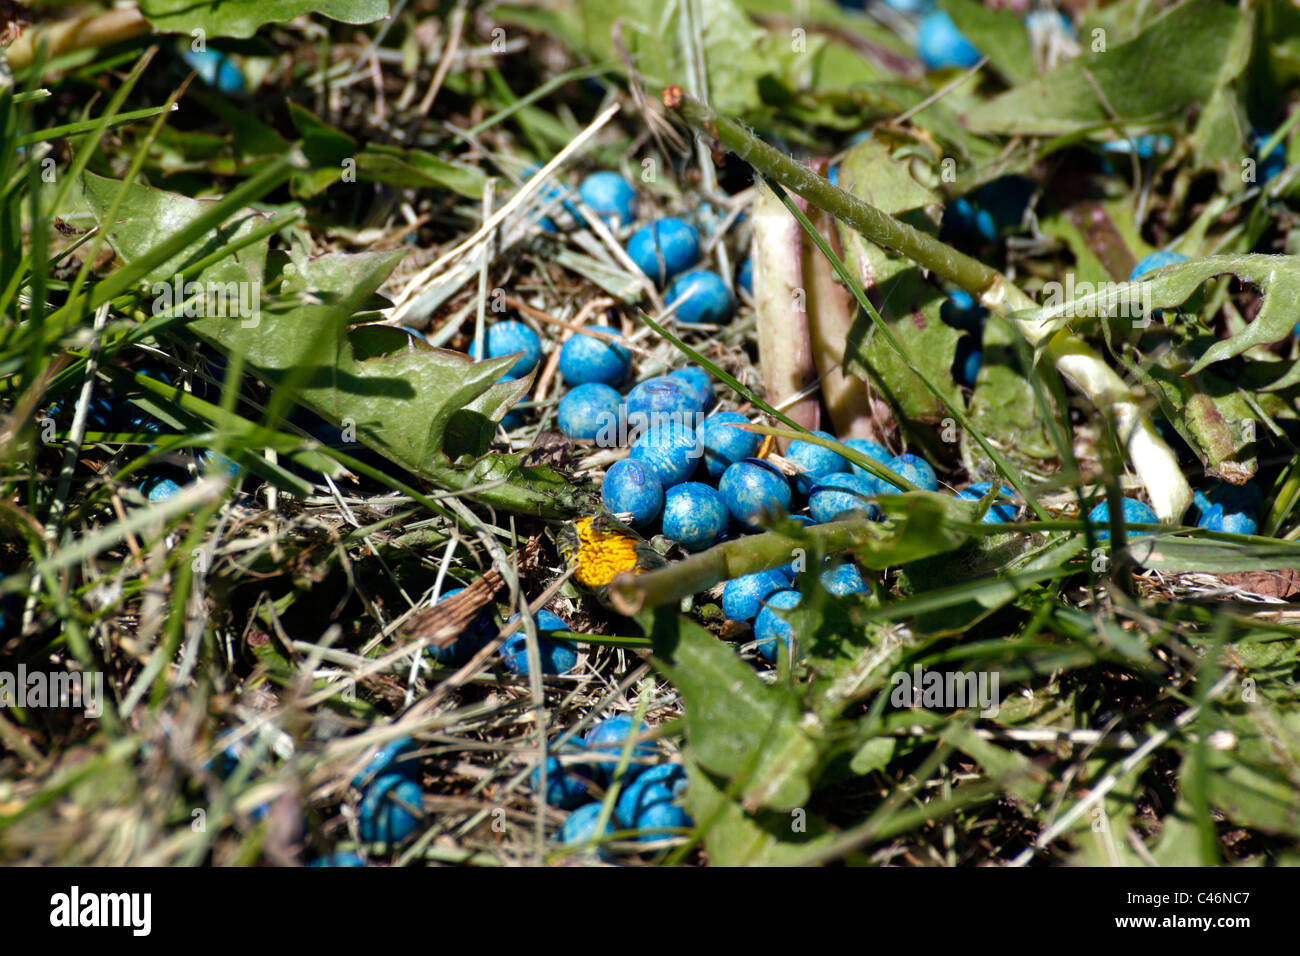 Derramado recubierto de semillas de soja en azul fungicida(?). Foto de stock